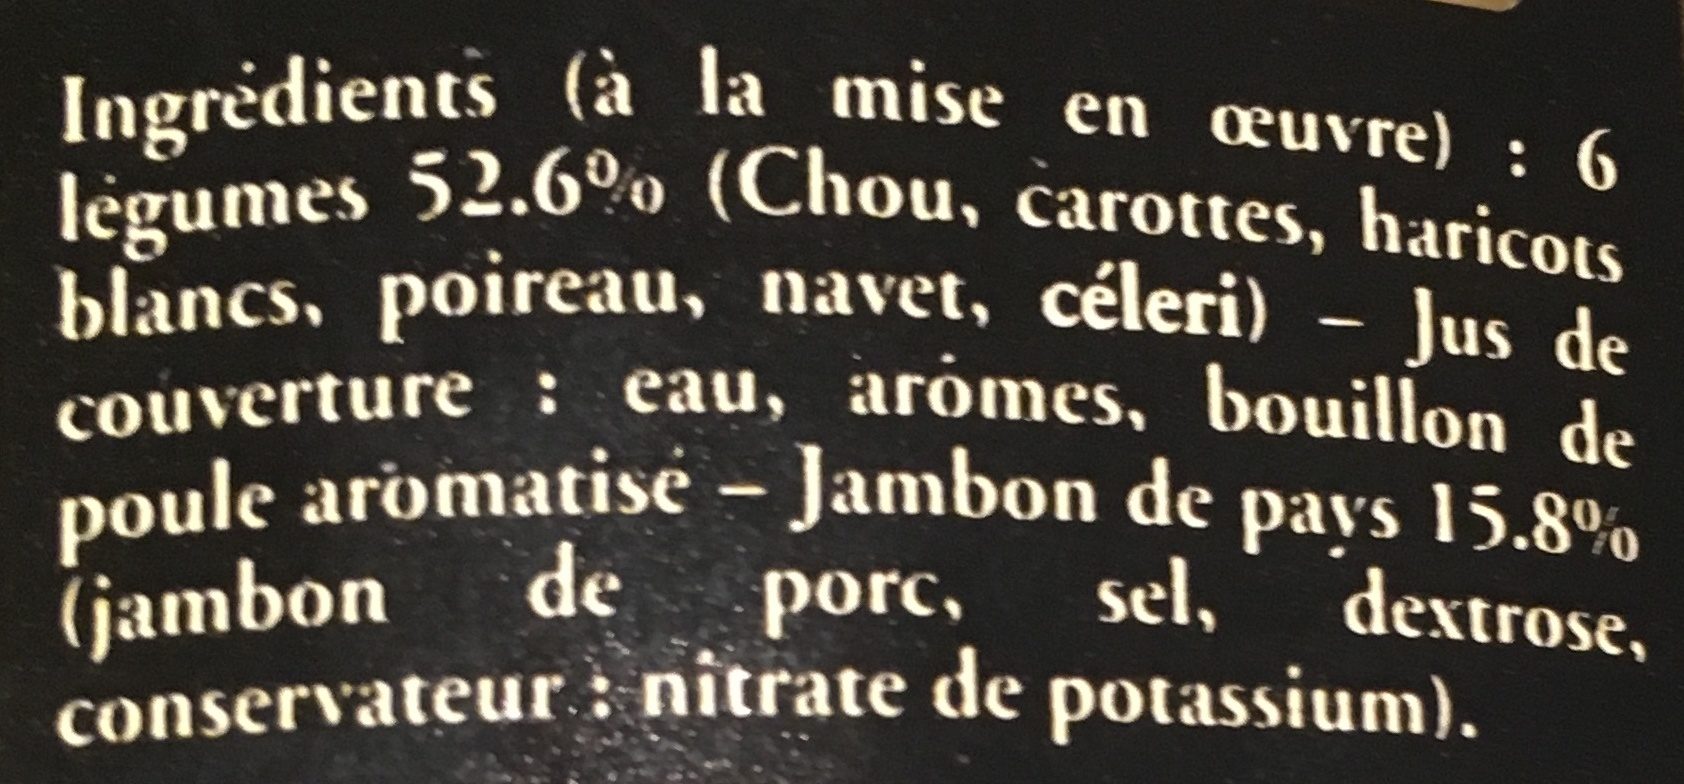 Garbure de jambon aux 6 légumes - Ingredients - fr